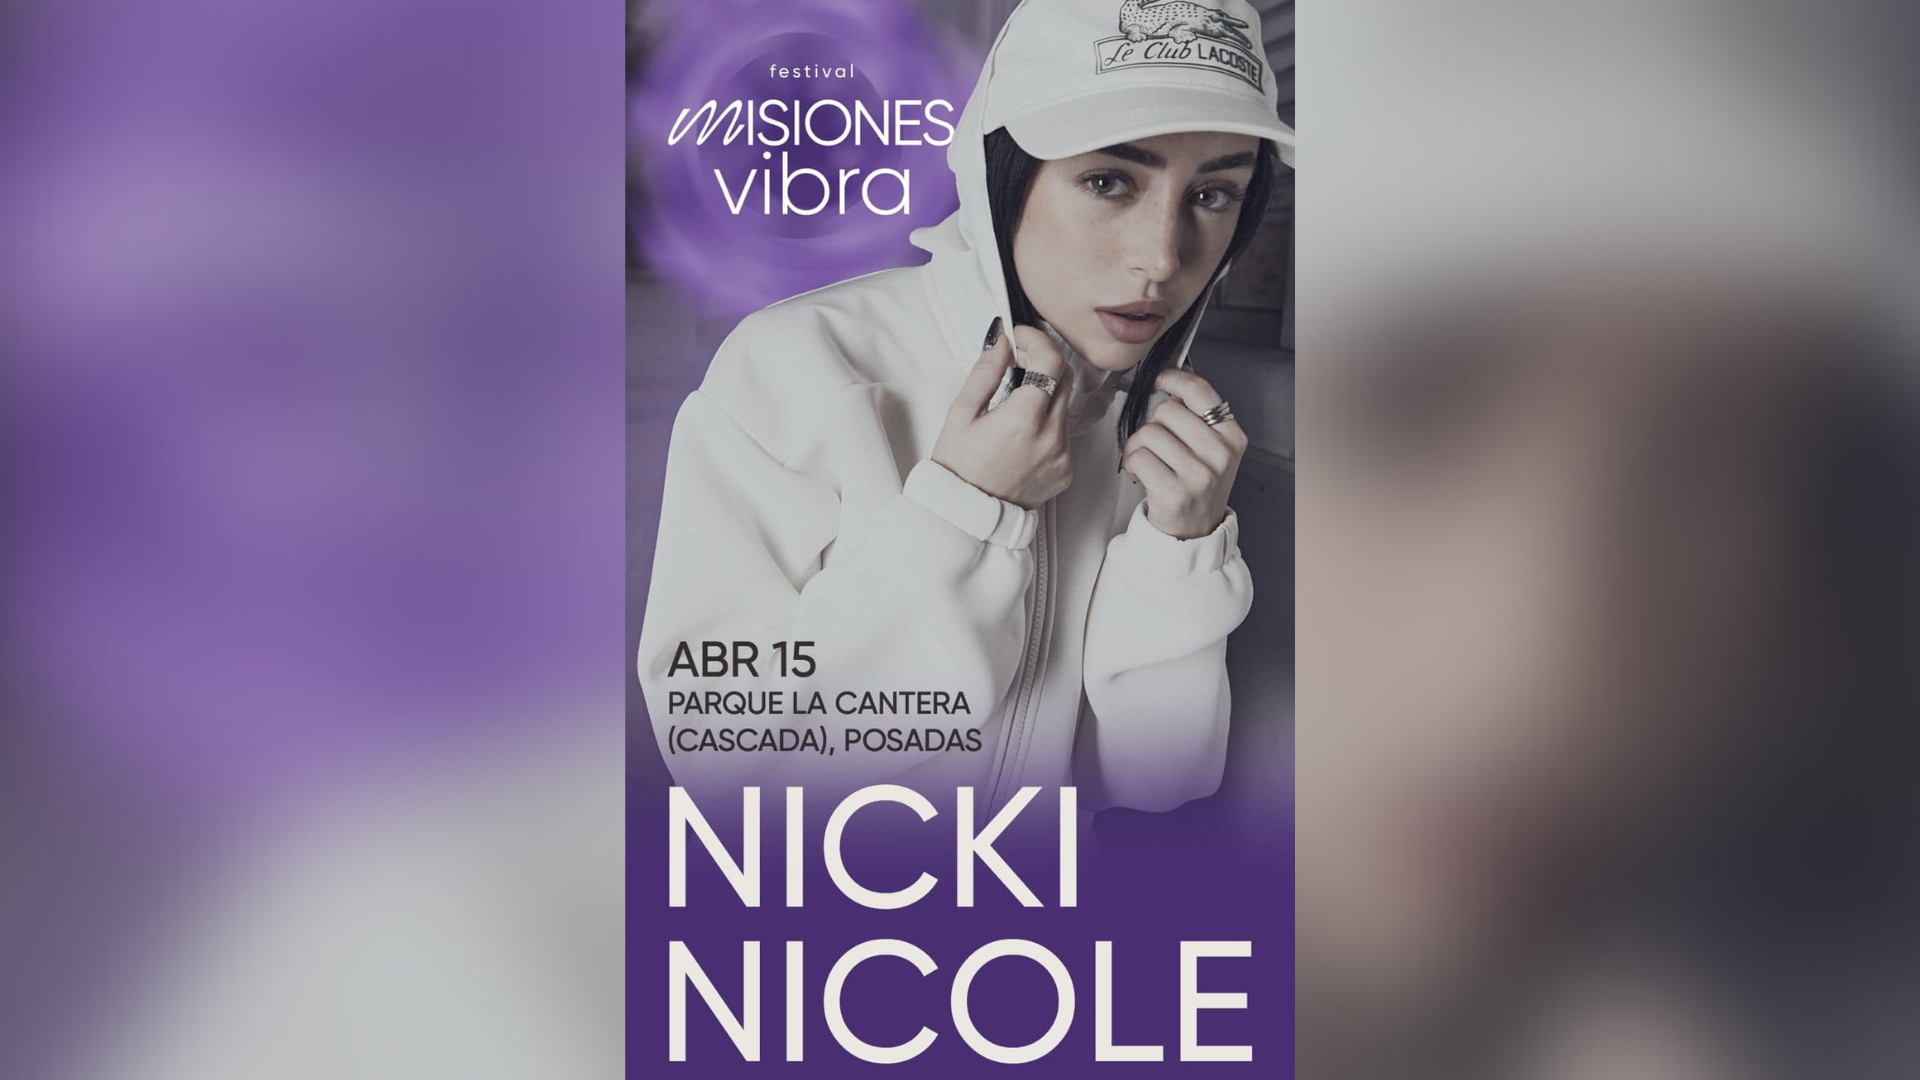 La cantante Nicki Nicole se presentará gratis en Posadas el 15 de abril